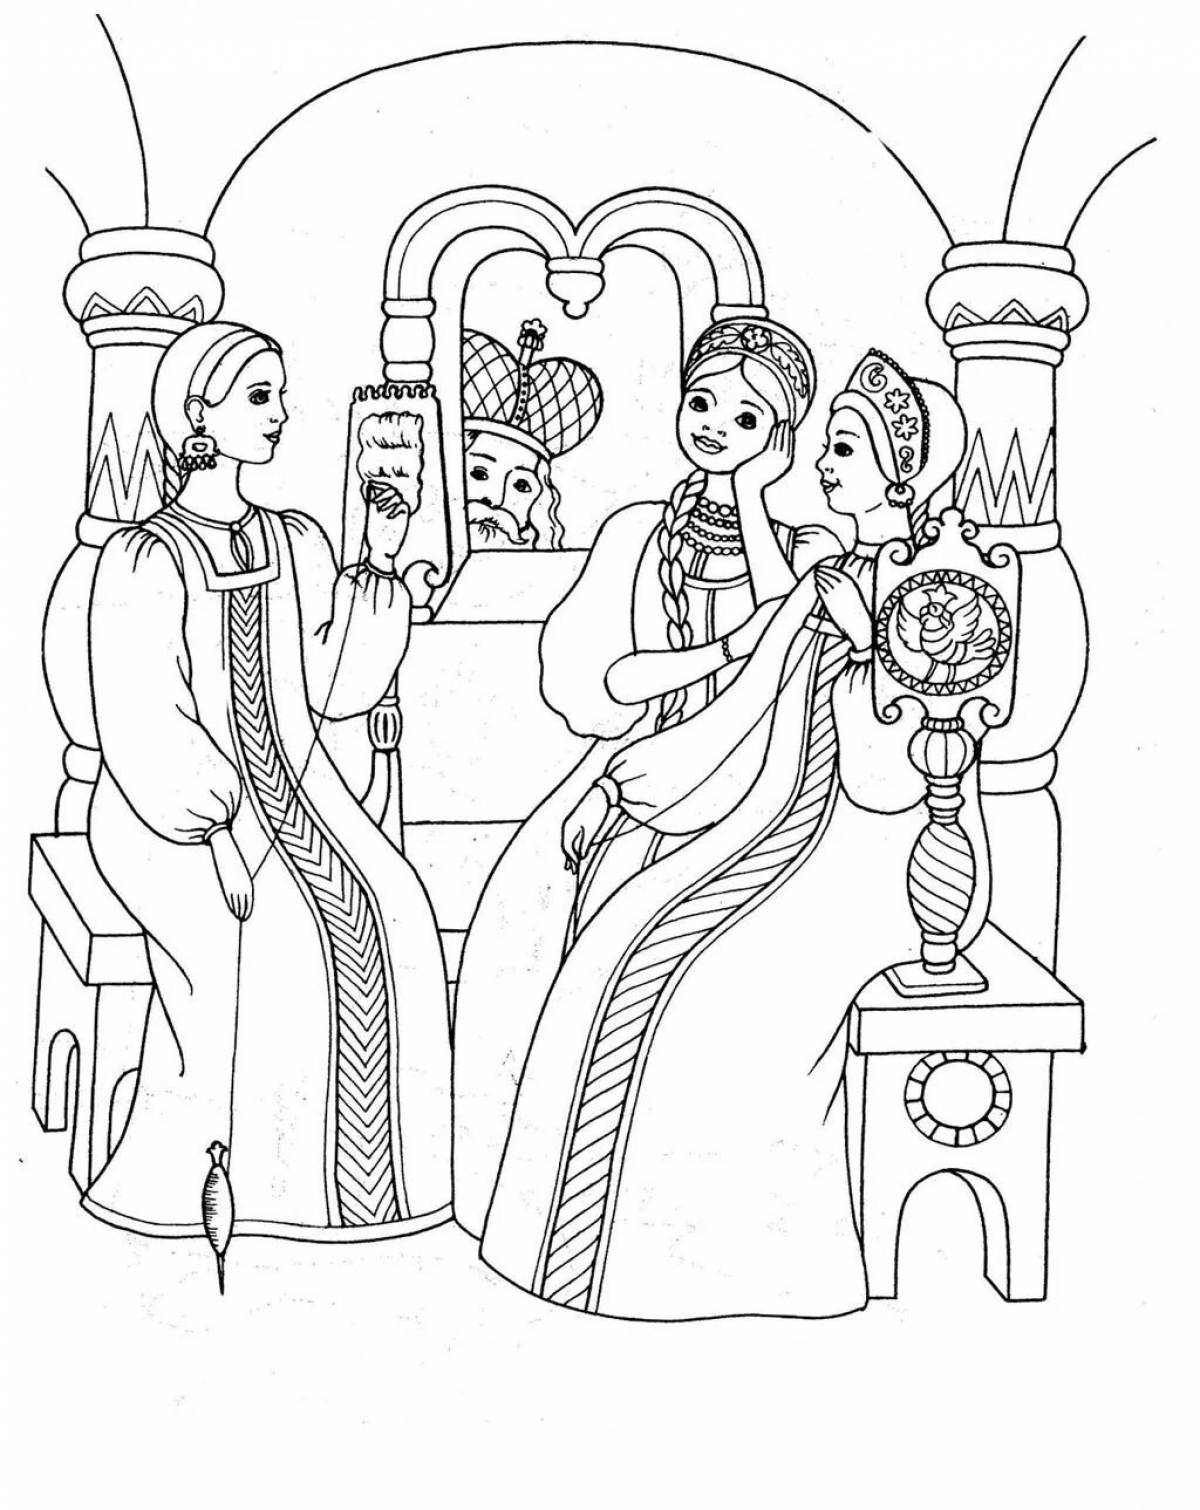 Иллюстрация к сказке о царе салтане 3 класс #3